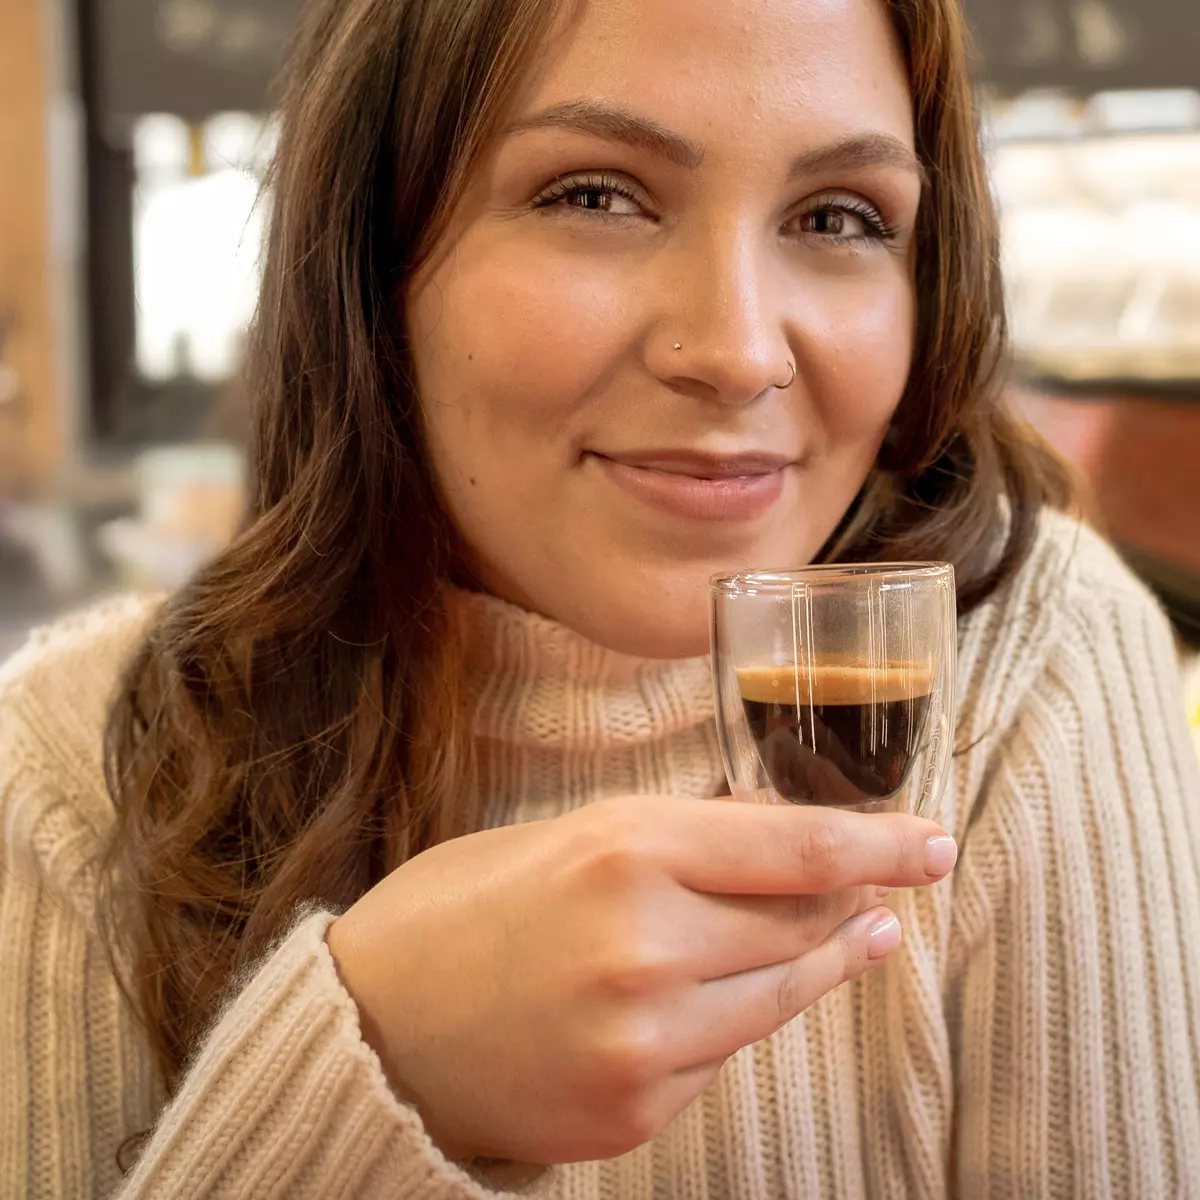 Frau hält lächelnd das Königsglas in der Hand und genießt den Espresso